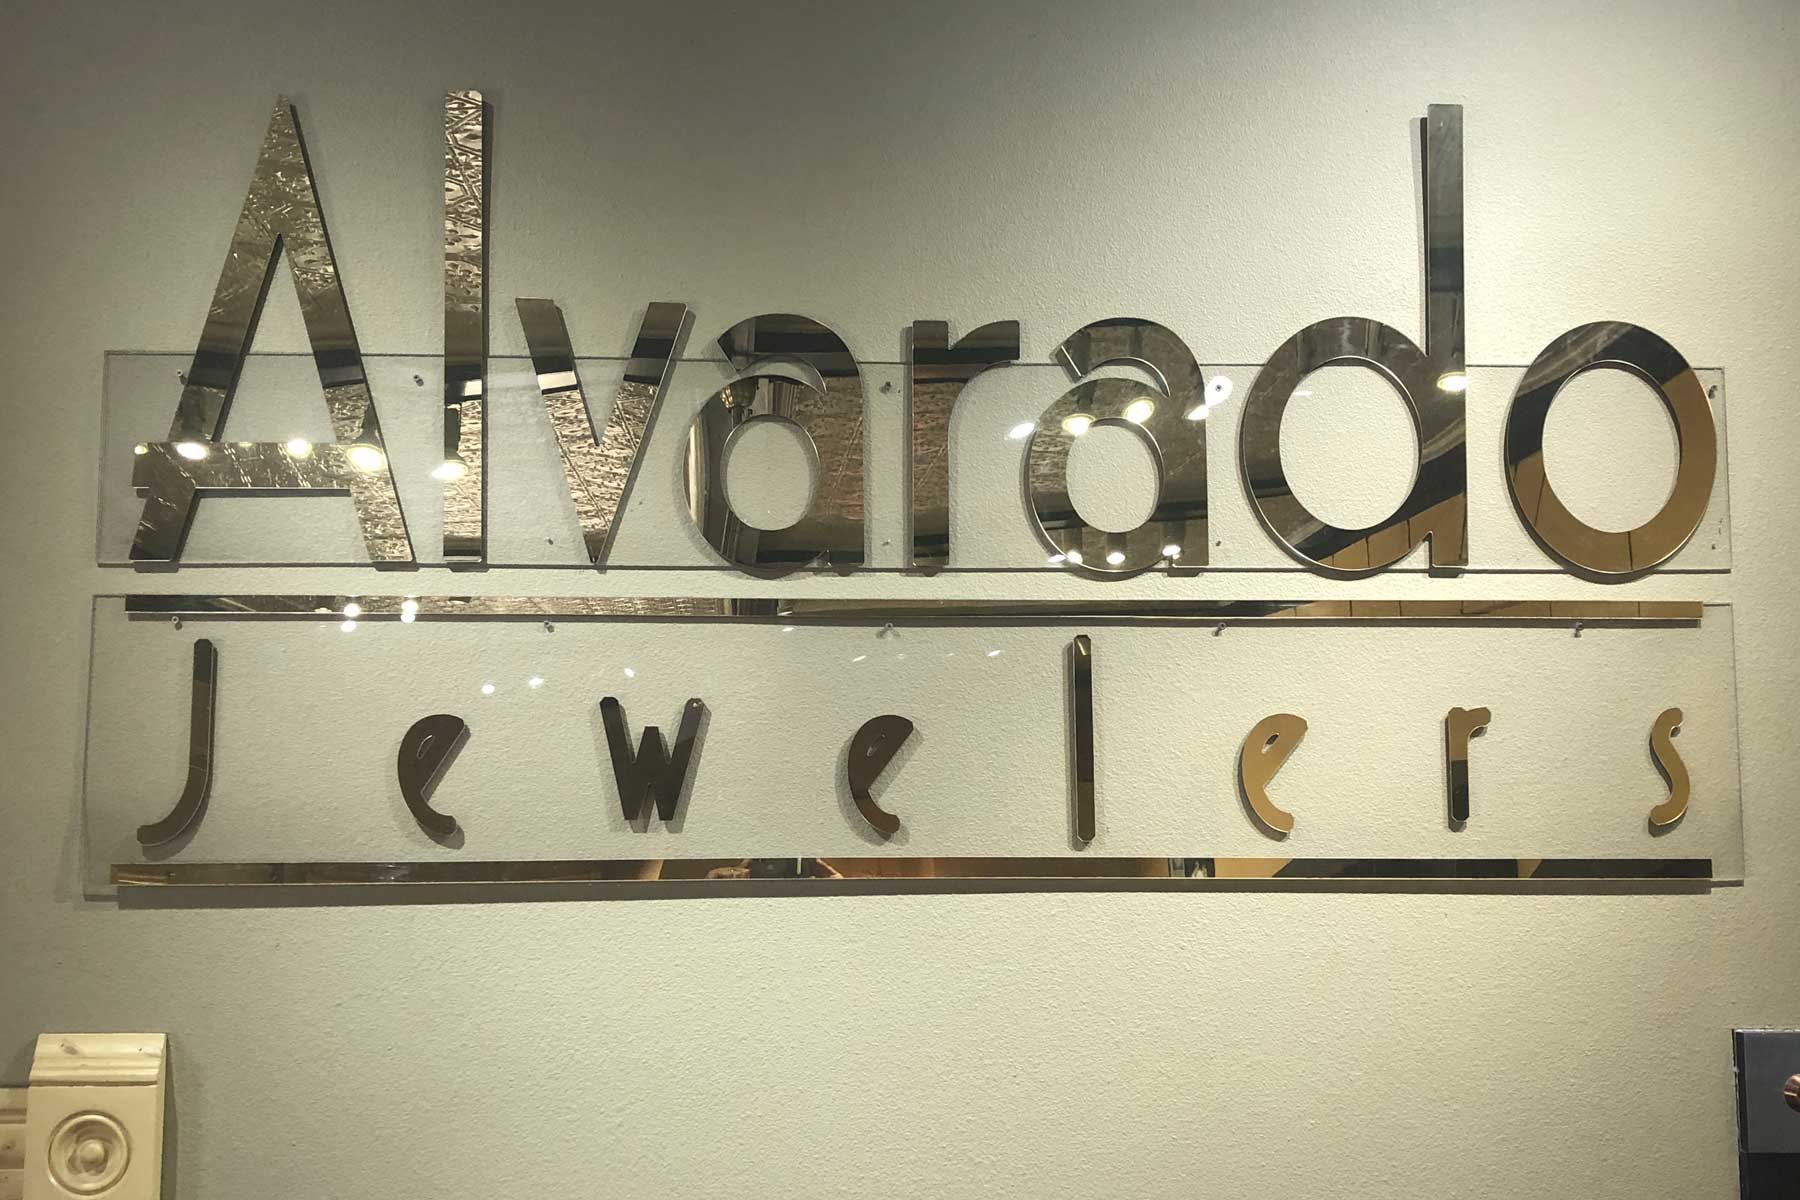 Alvarado Jewelers